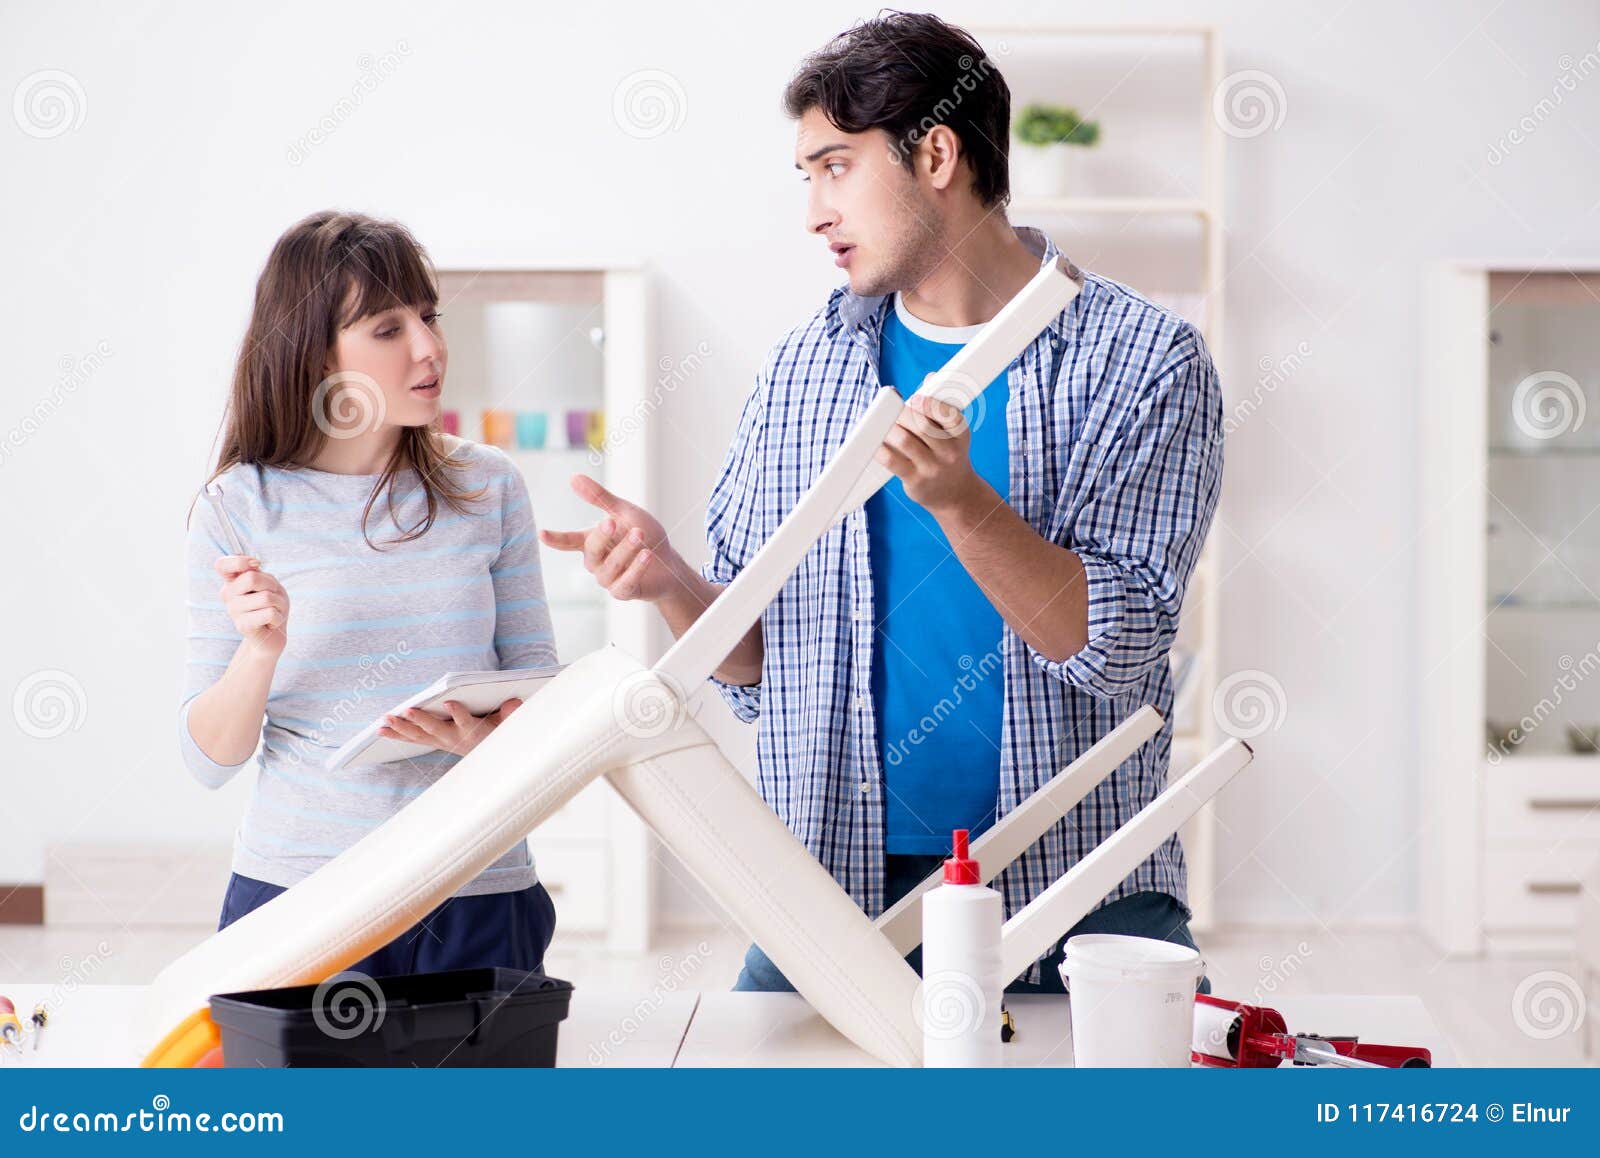 Helping the wife. Наблюдать за ремонтом. Helping husband. Как заставить мужа починить что то дома.